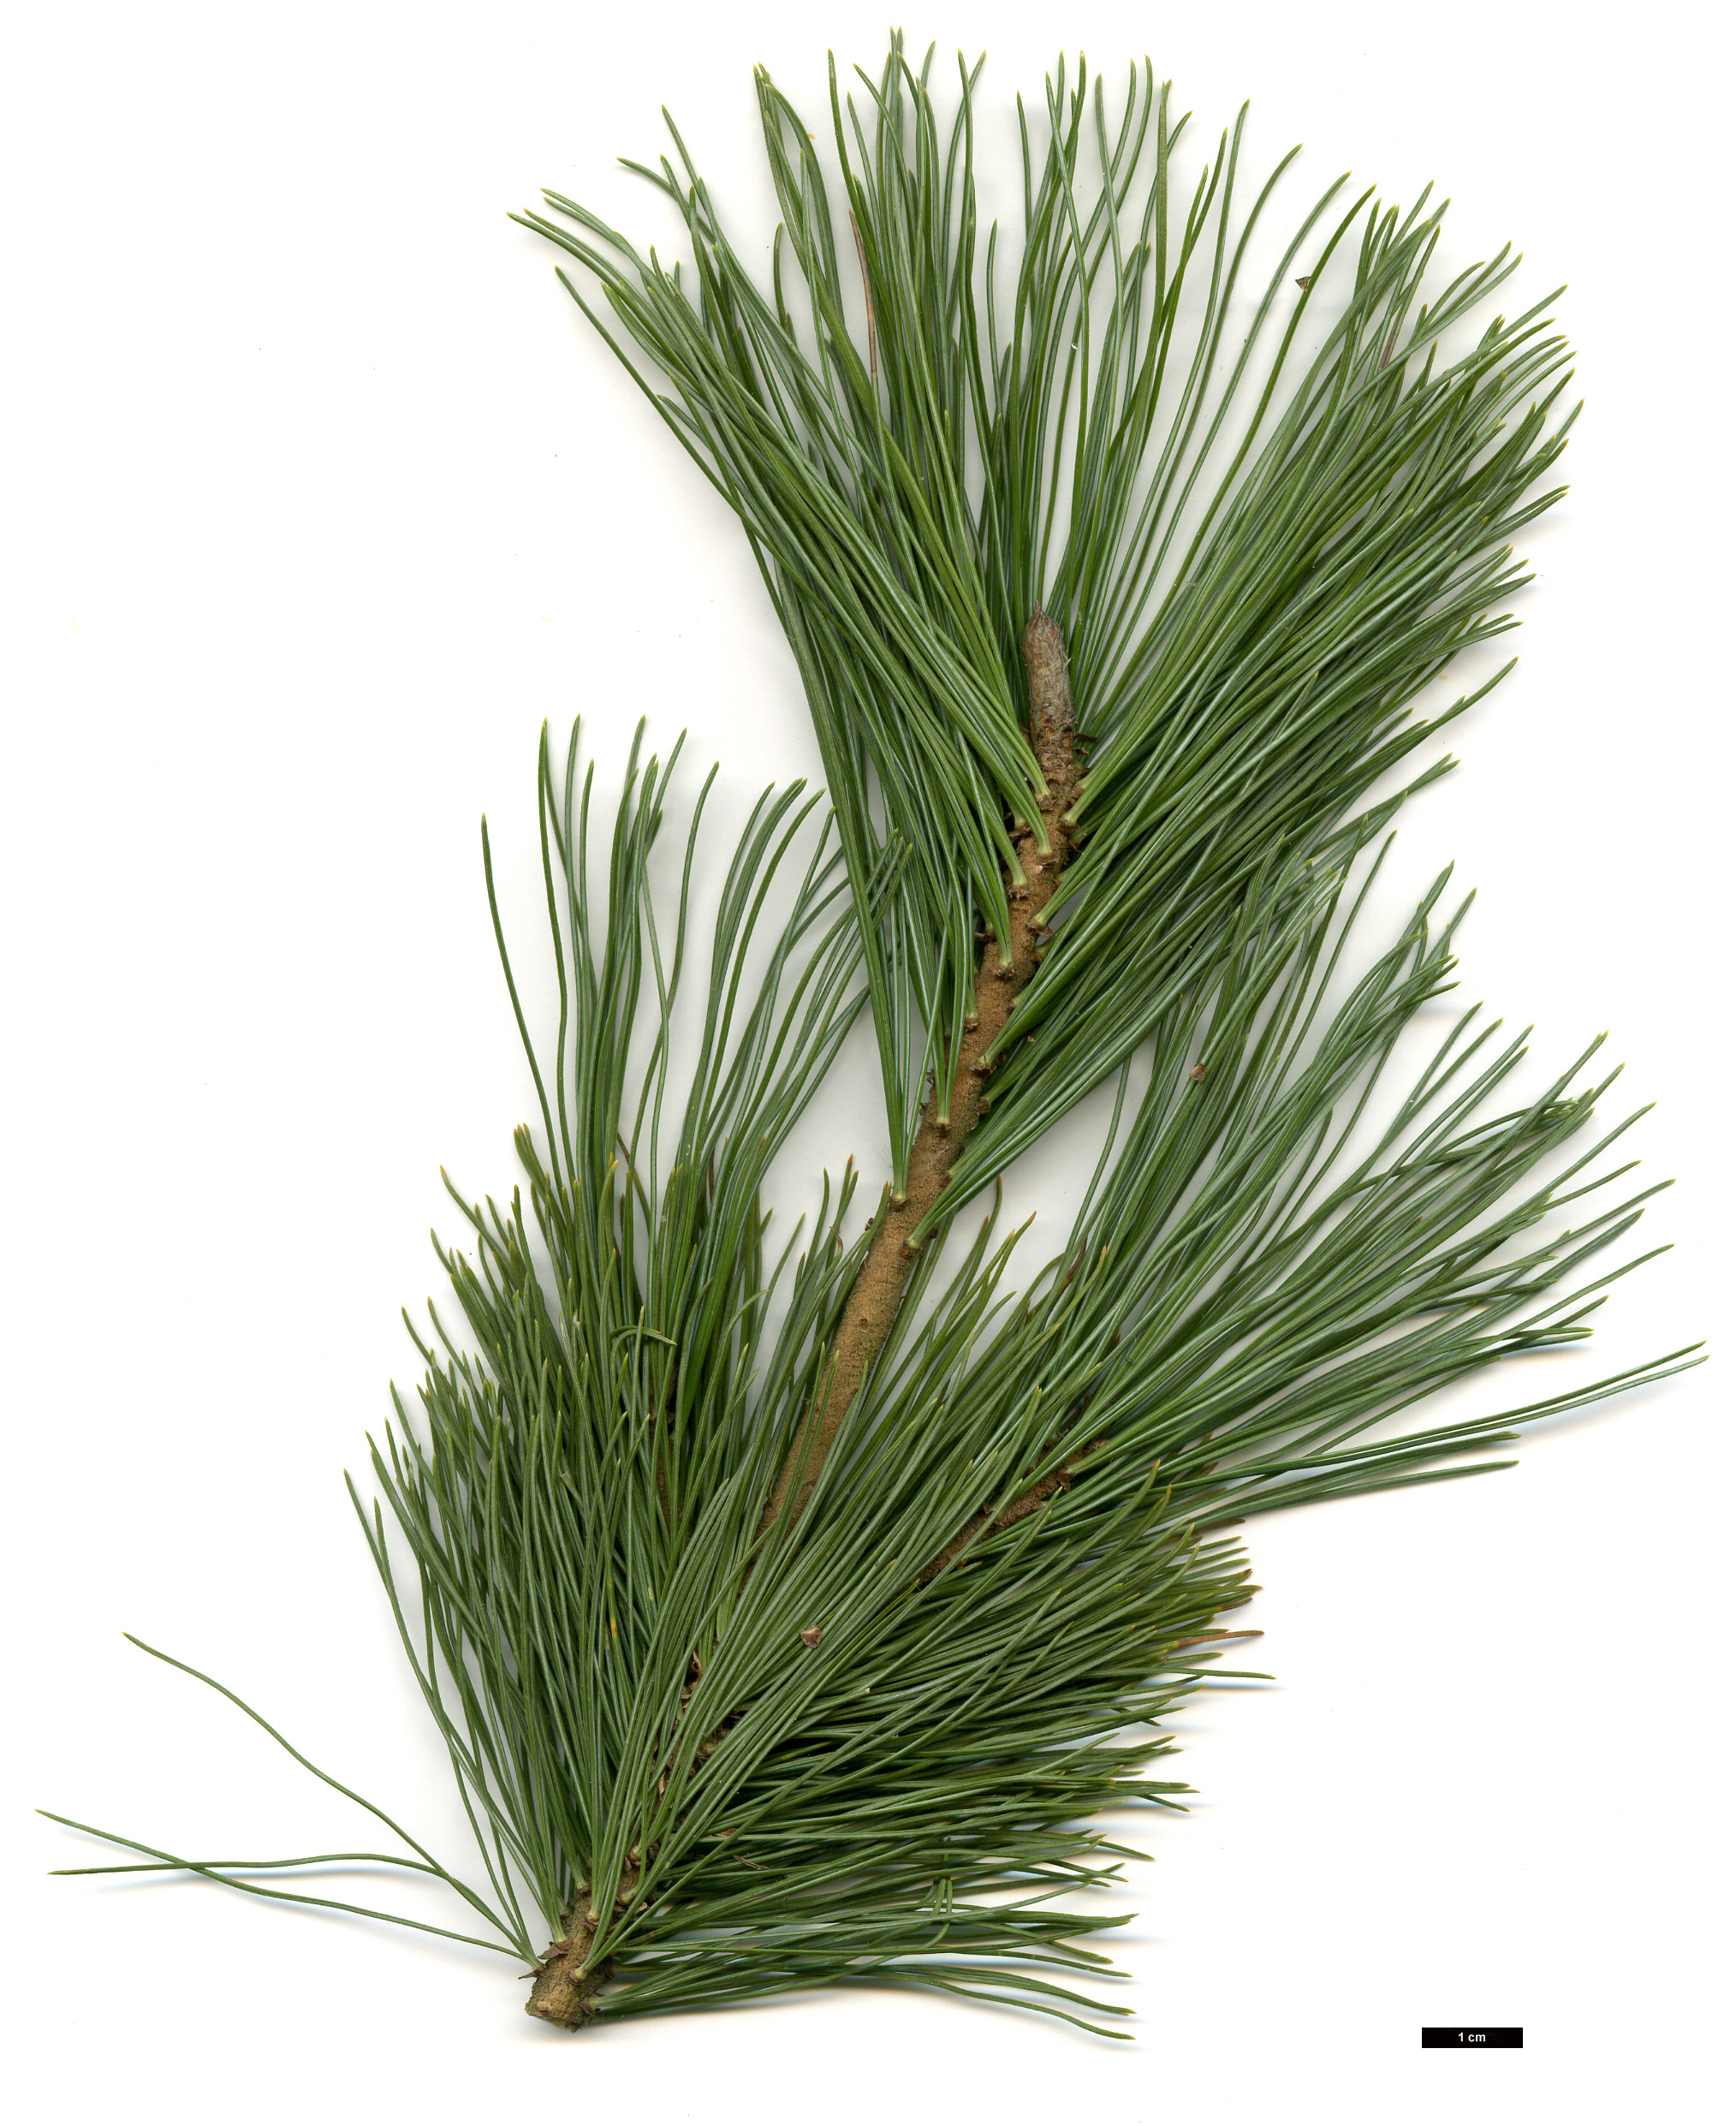 High resolution image: Family: Pinaceae - Genus: Pinus - Taxon: pumila - SpeciesSub: 'Glauca'